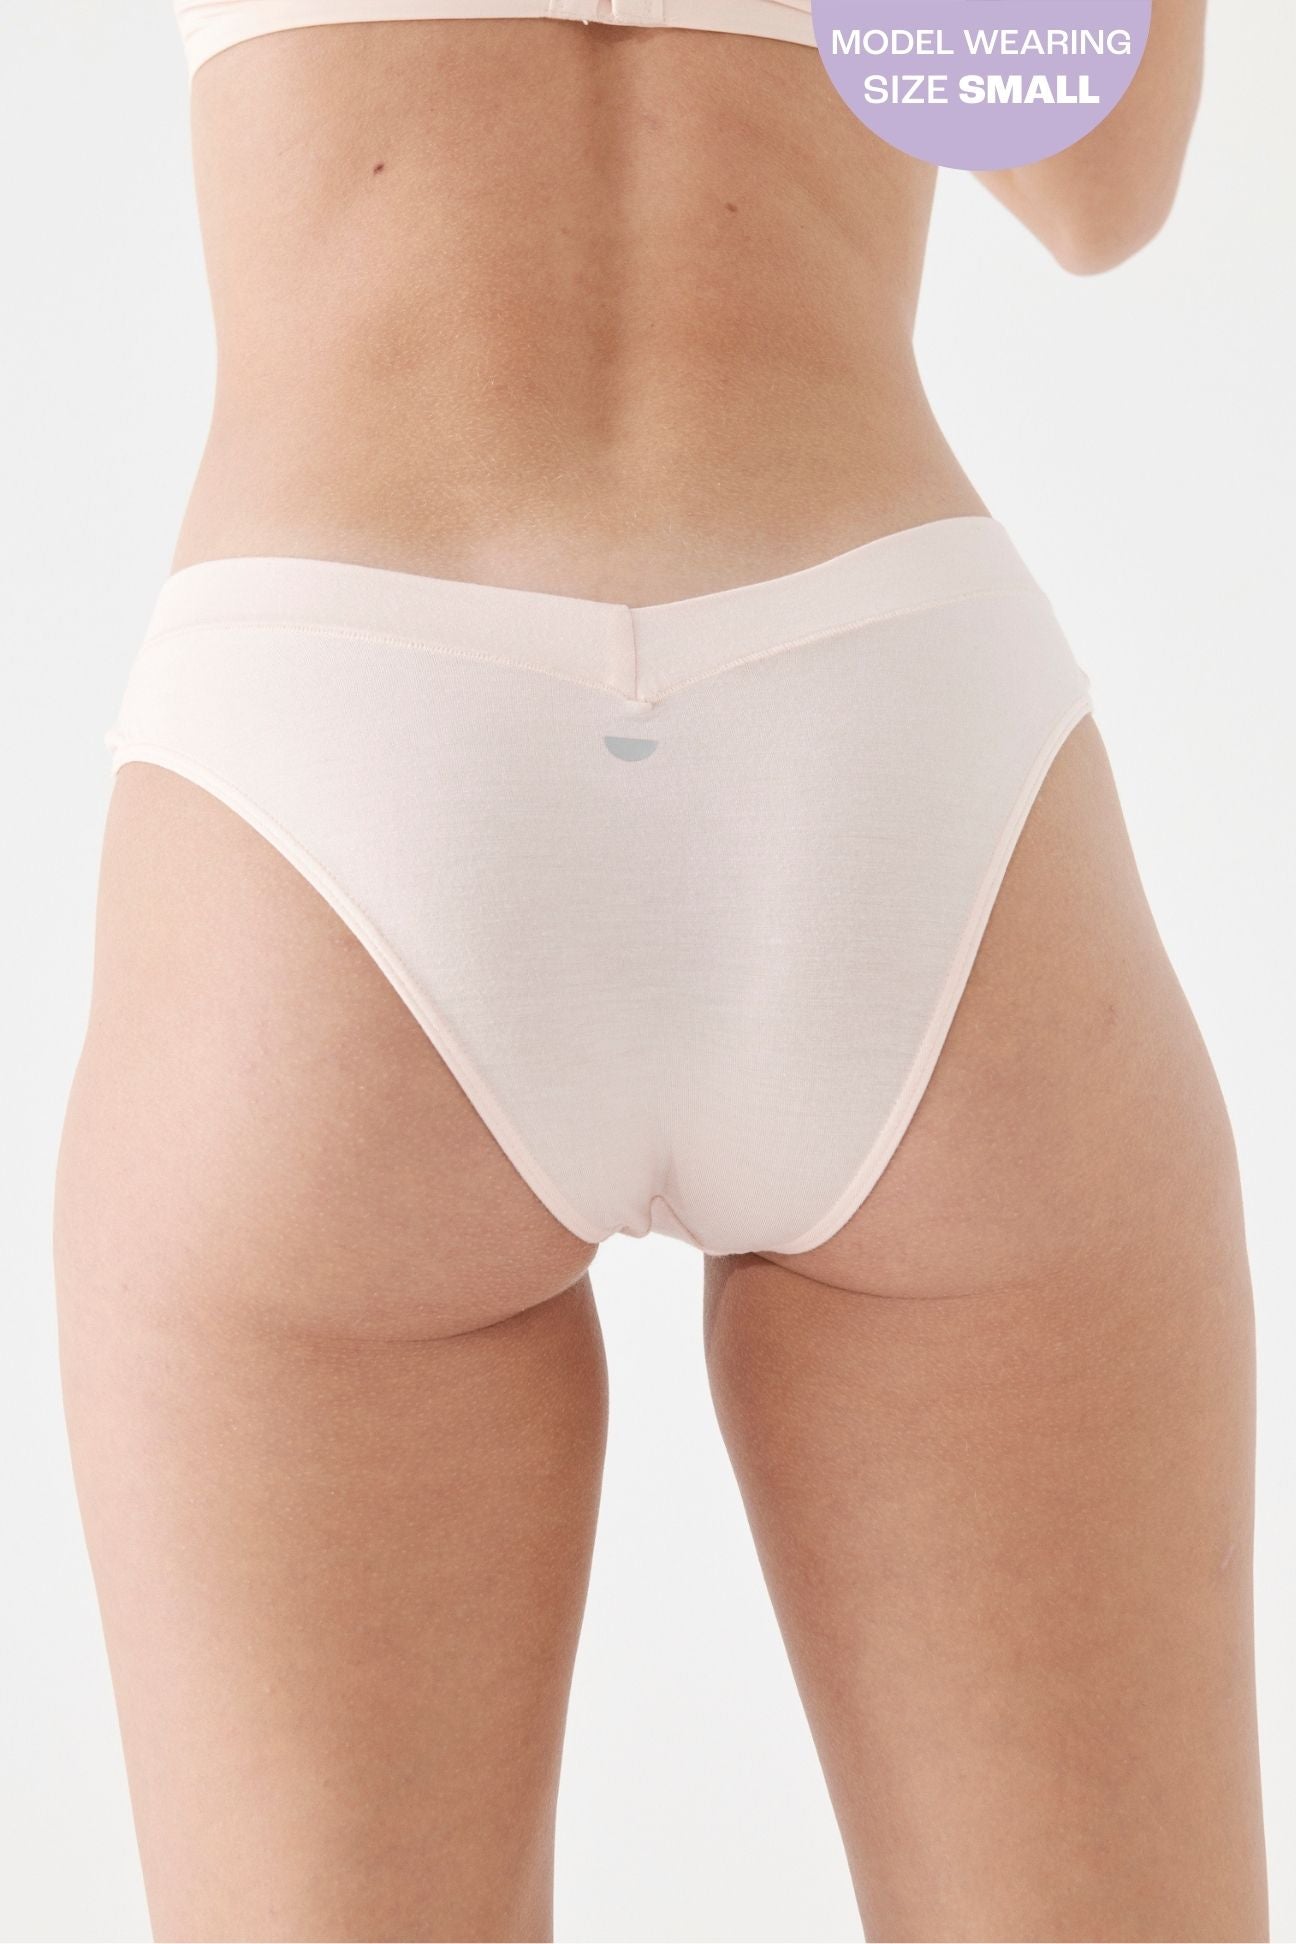 The Bikini - Blush, Undies - First Thing Underwear